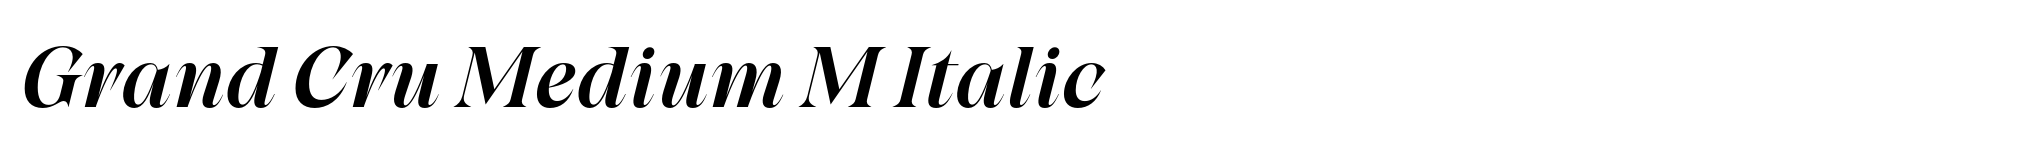 Grand Cru Medium M Italic image